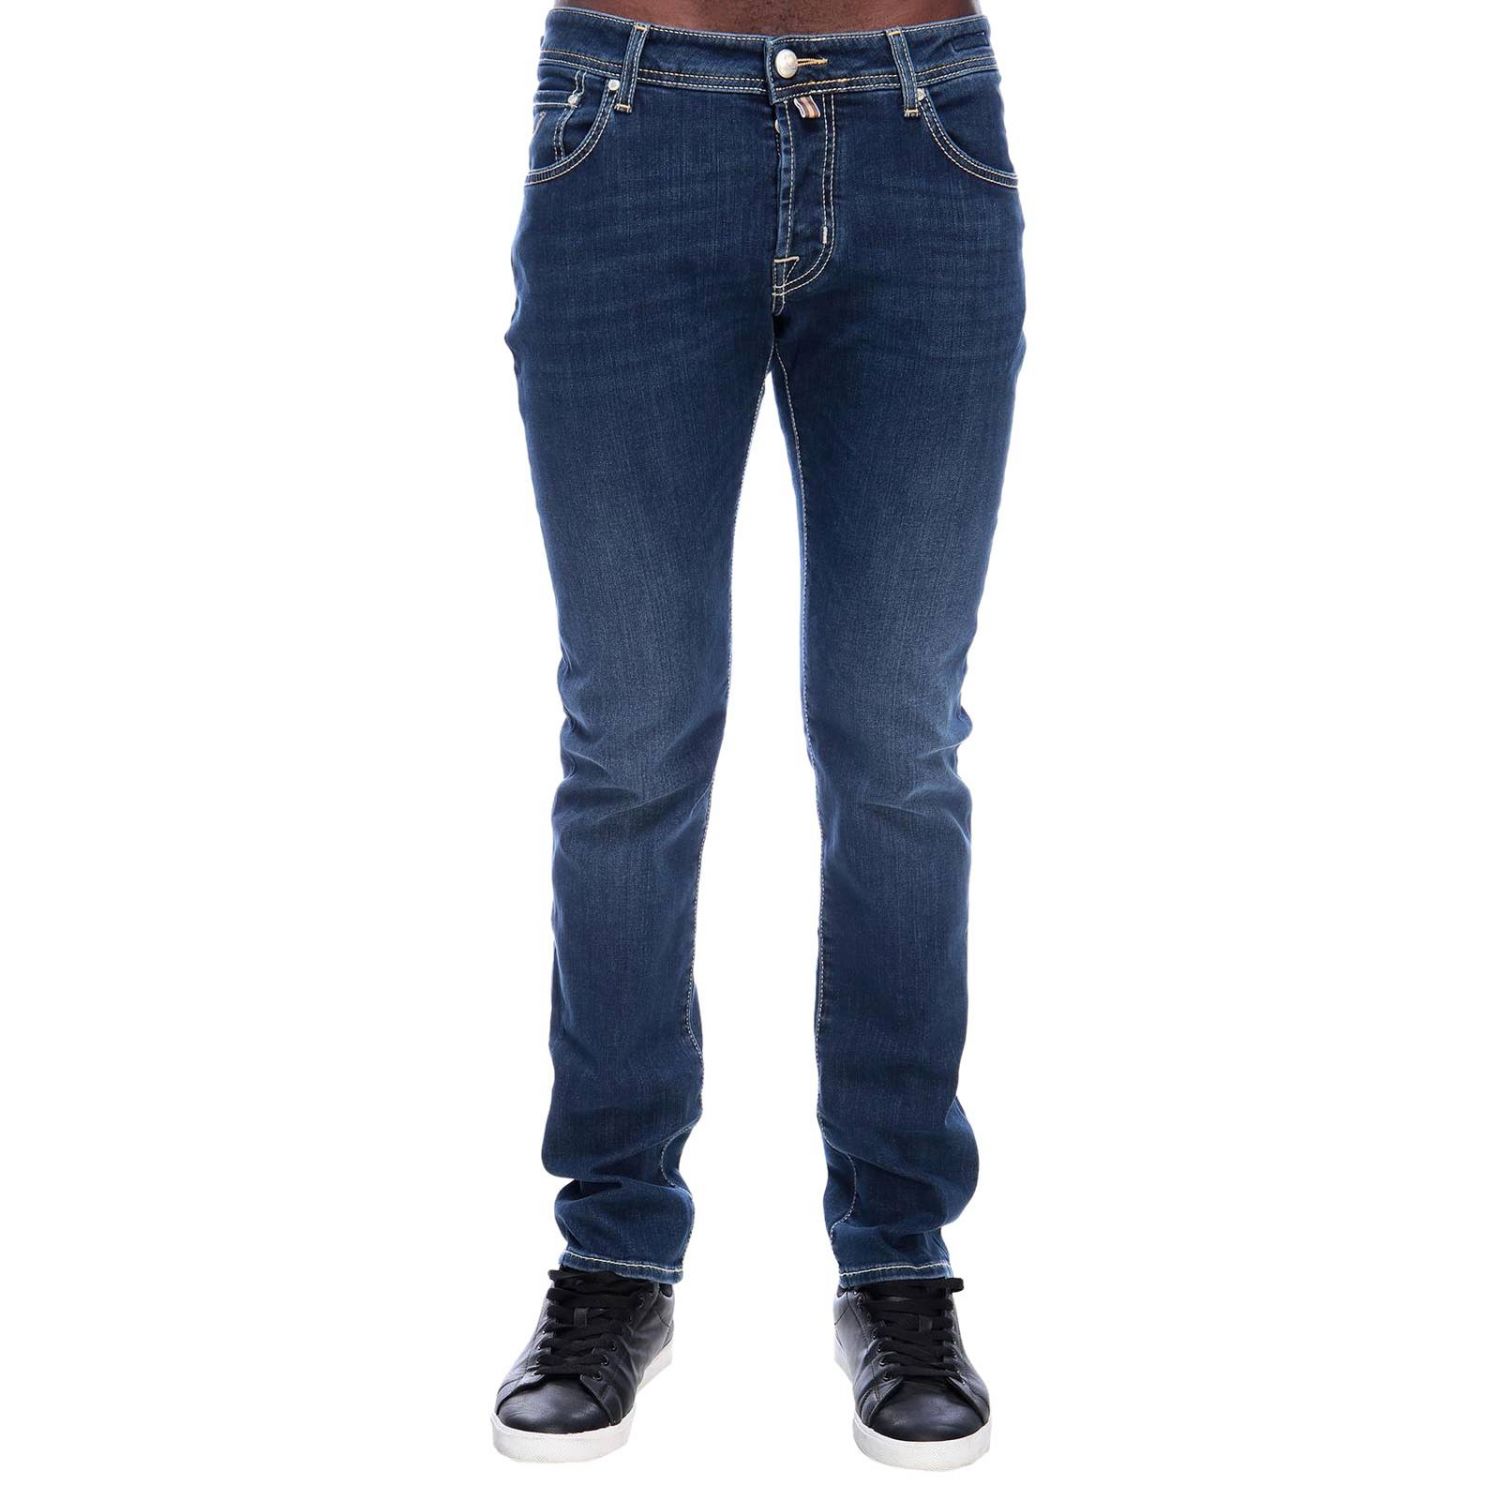 Jacob Cohen Outlet: Jeans men | Jeans Jacob Cohen Men Denim | Jeans ...